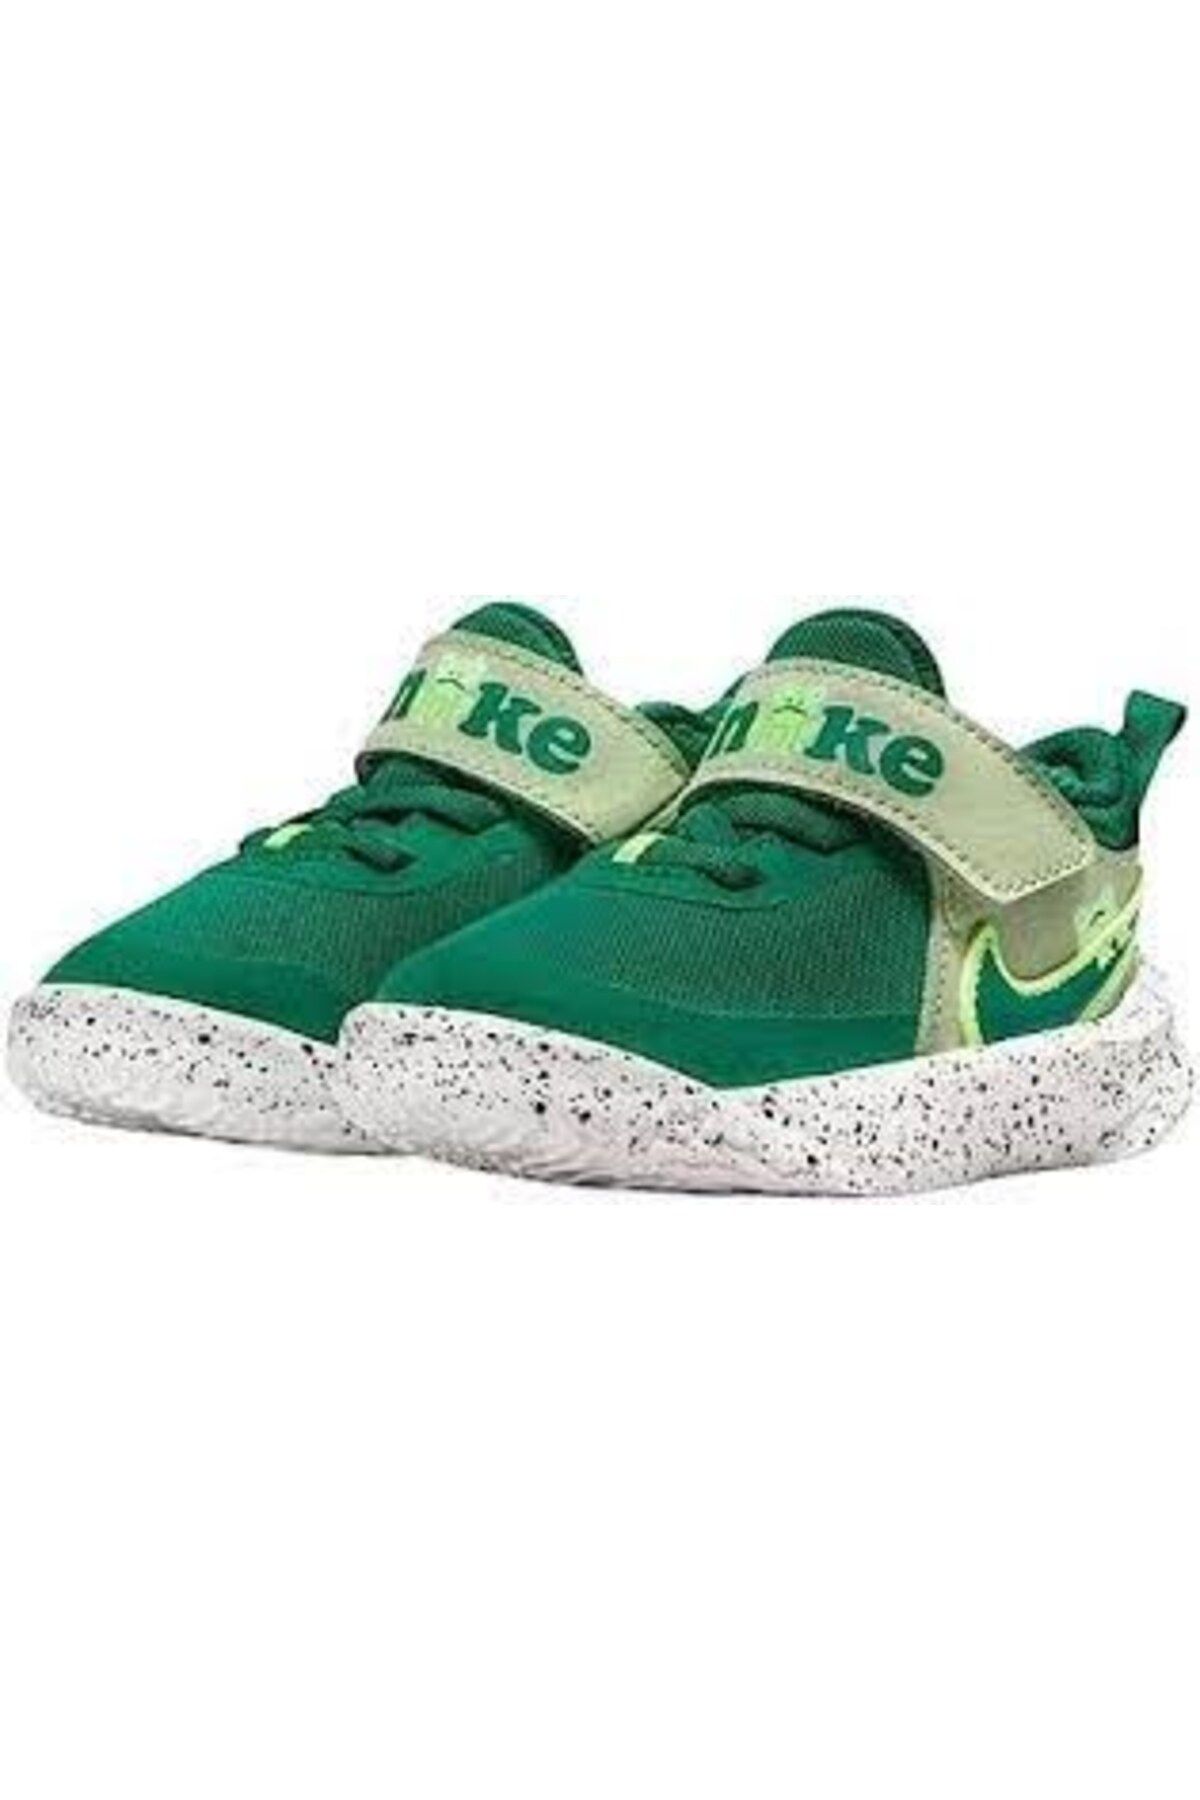 Nike NikeTeam Hustle D 10 Lıl (td) Çocuk Ayakkabı dq0665-300